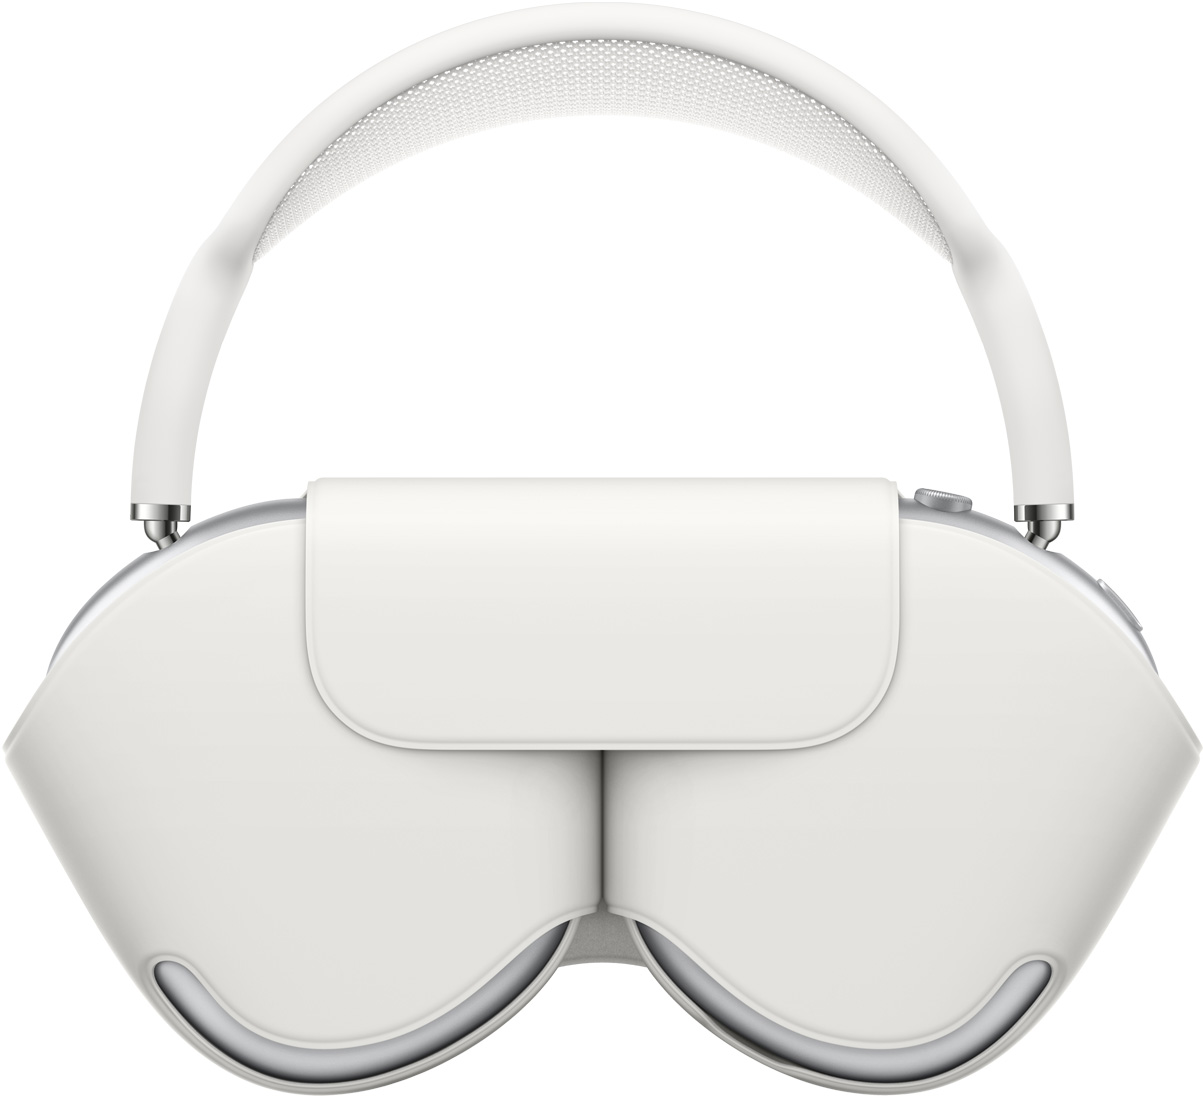 AirPods Max in zilver met een bijpassende witte Smart Case, waarmee de oorschelpen beschermd zijn. De hoofdband komt boven de gesloten case uit.